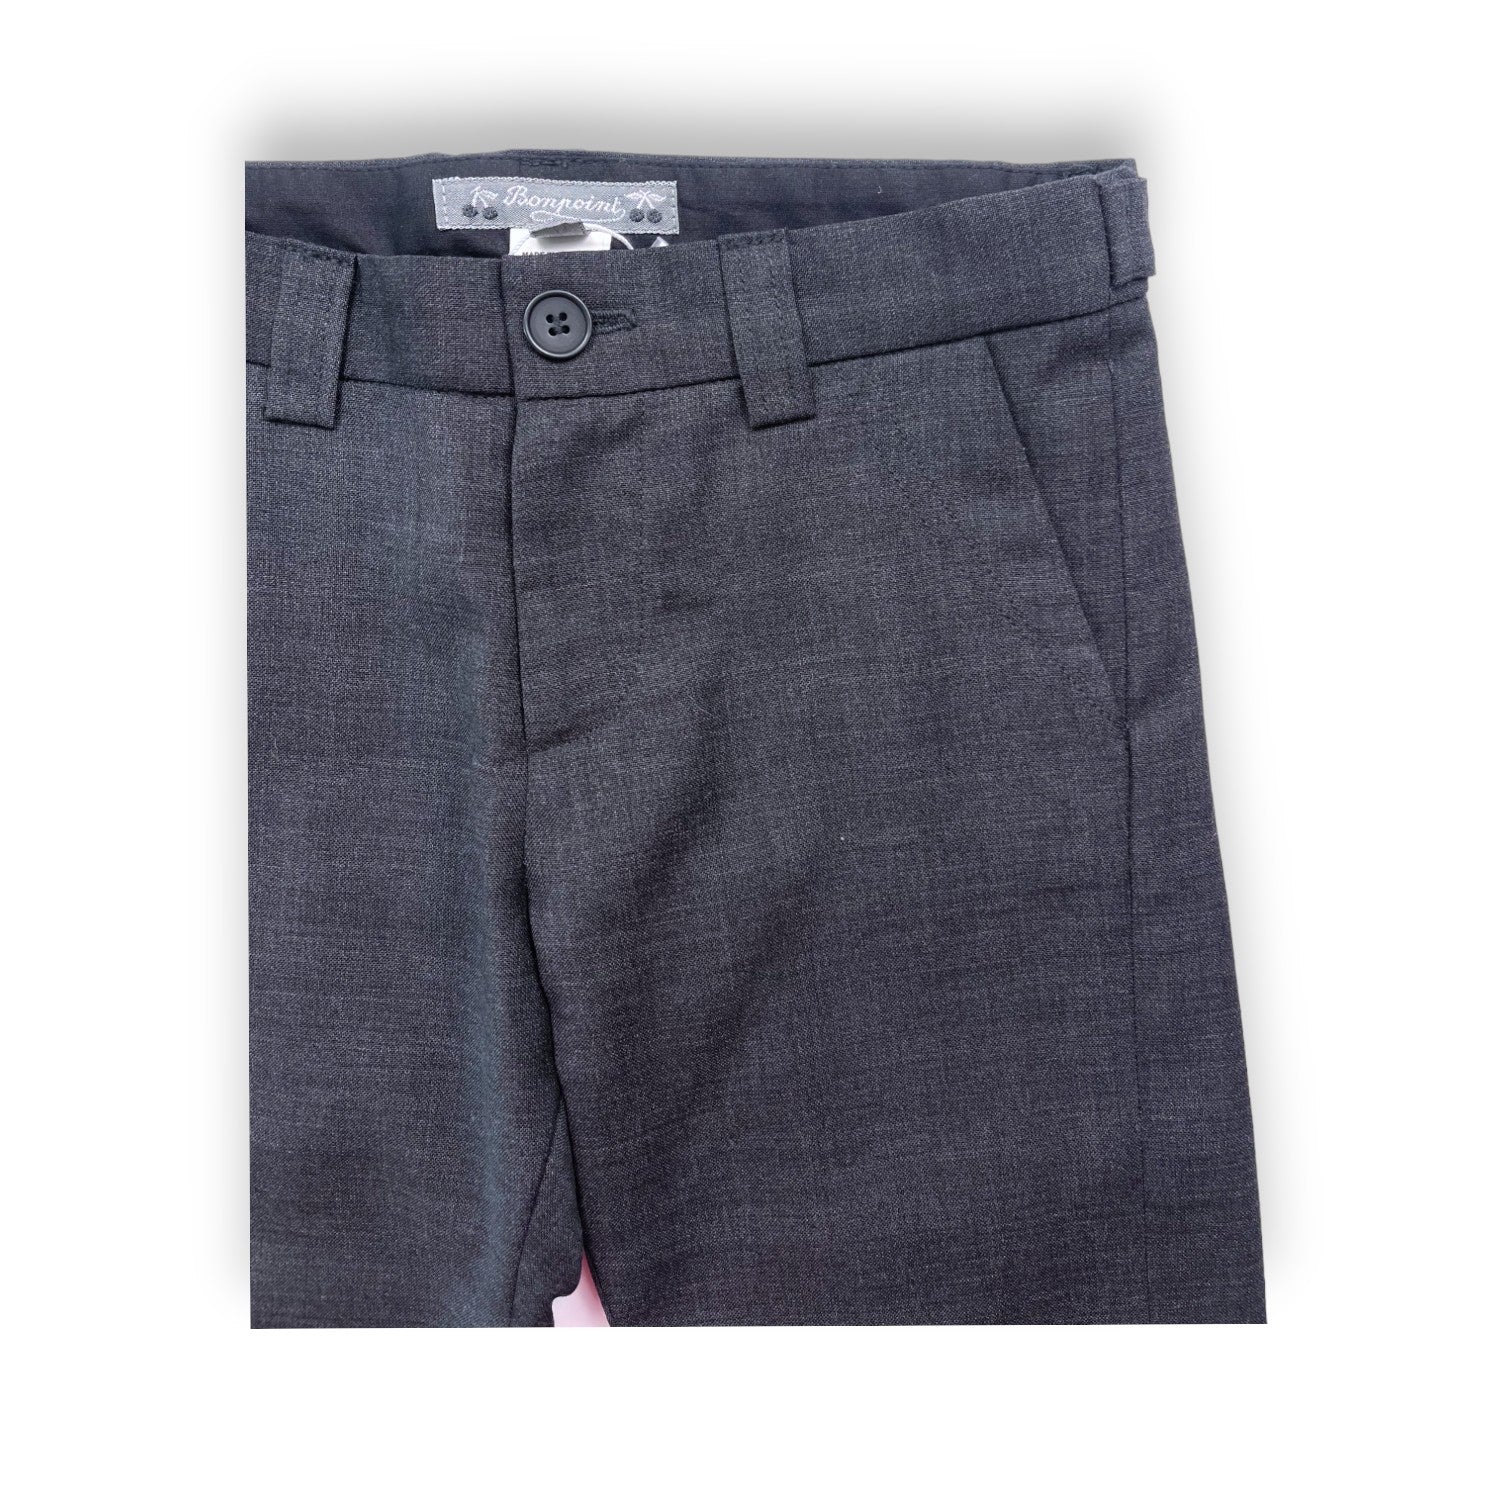 BONPOINT - Pantalon de costume gris (neuf) - 3 ans